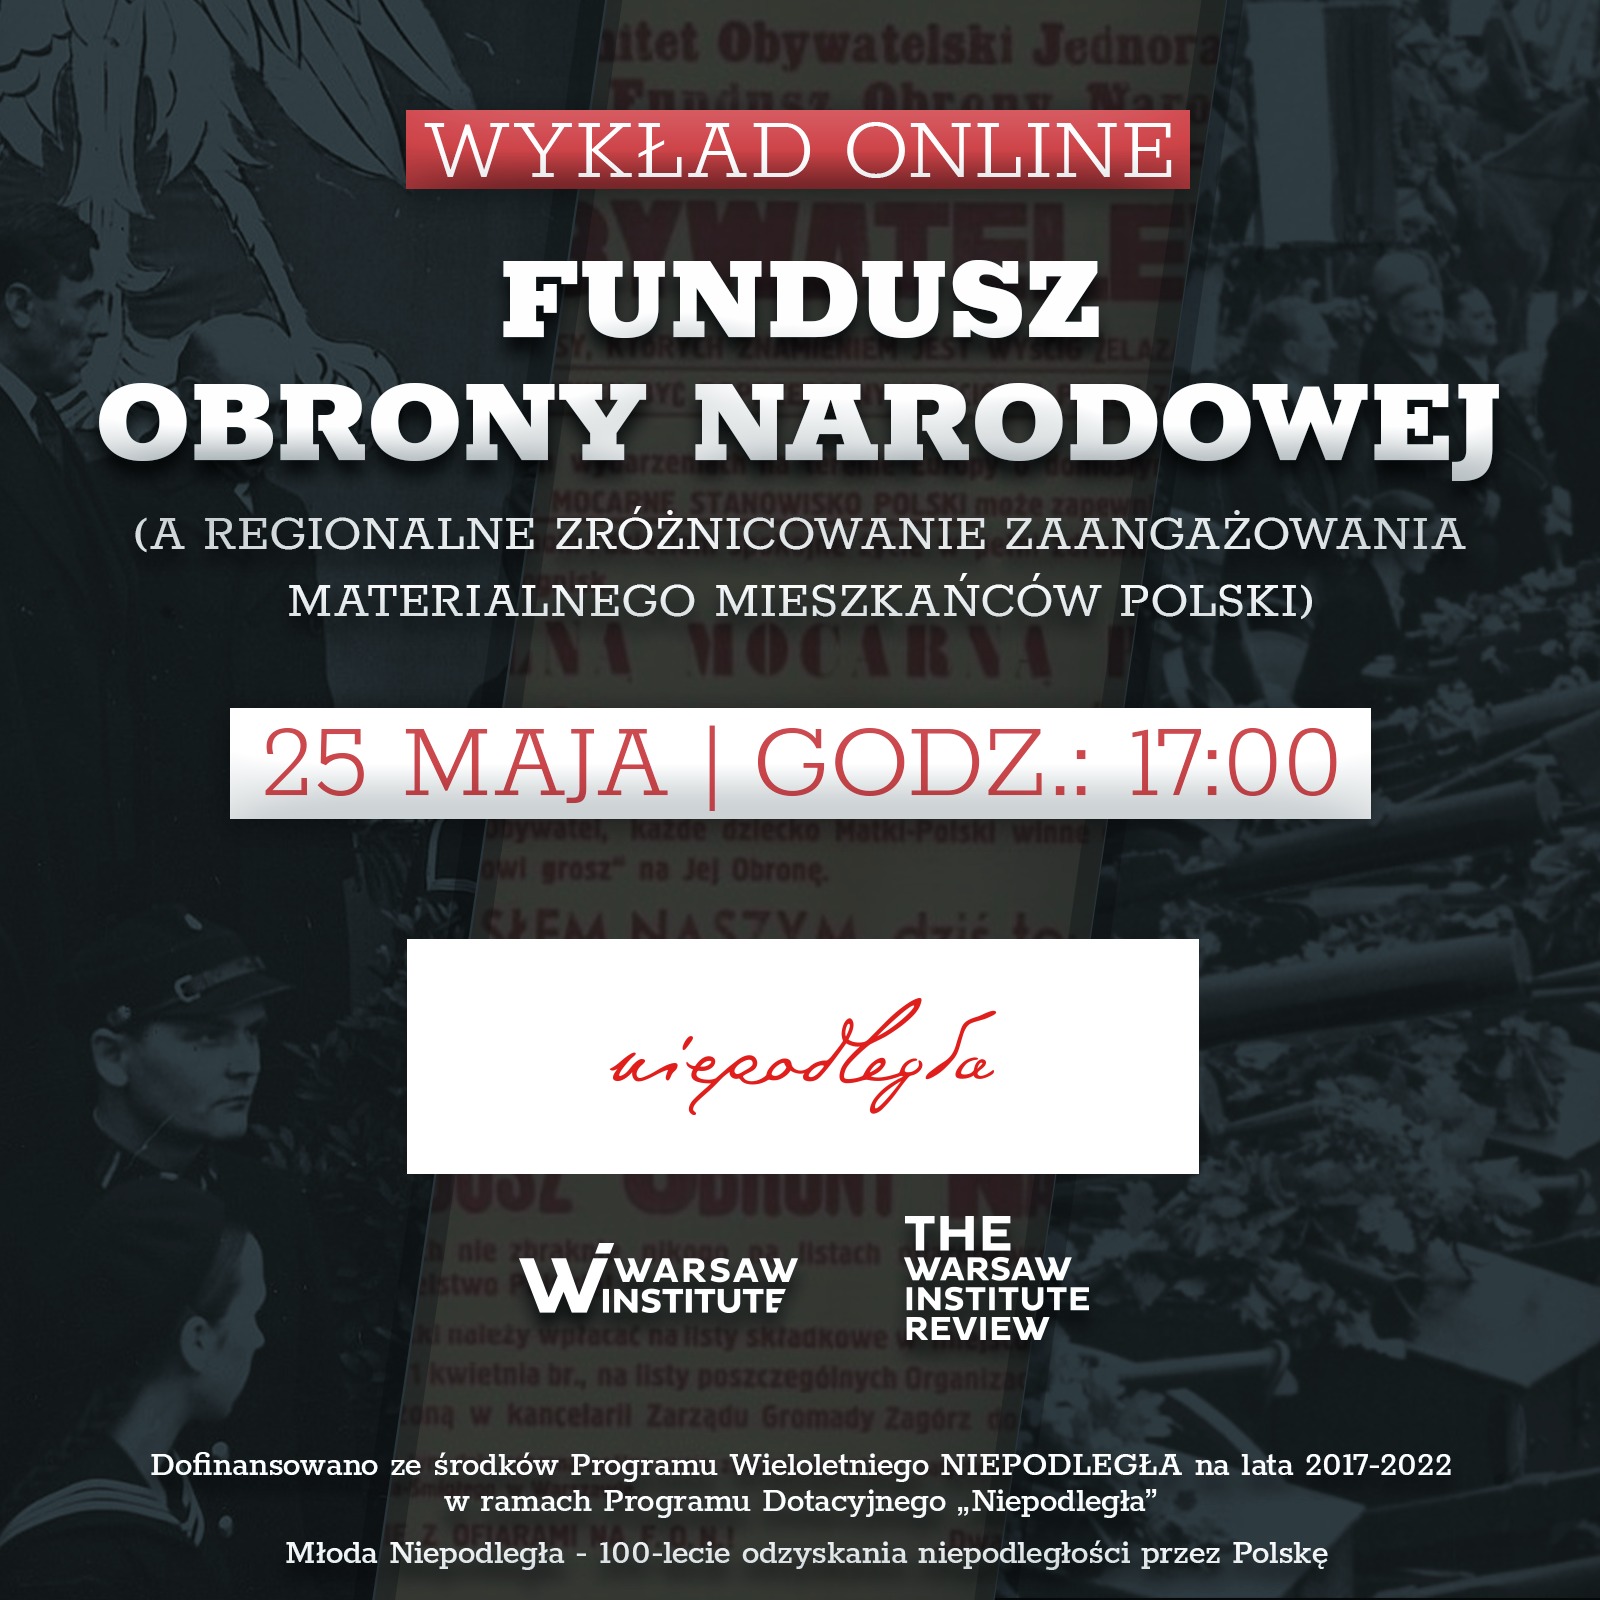 Fundusz Obrony Narodowej, a regionalne zróżnicowanie zaangażowania materialnego mieszkańców Polski.